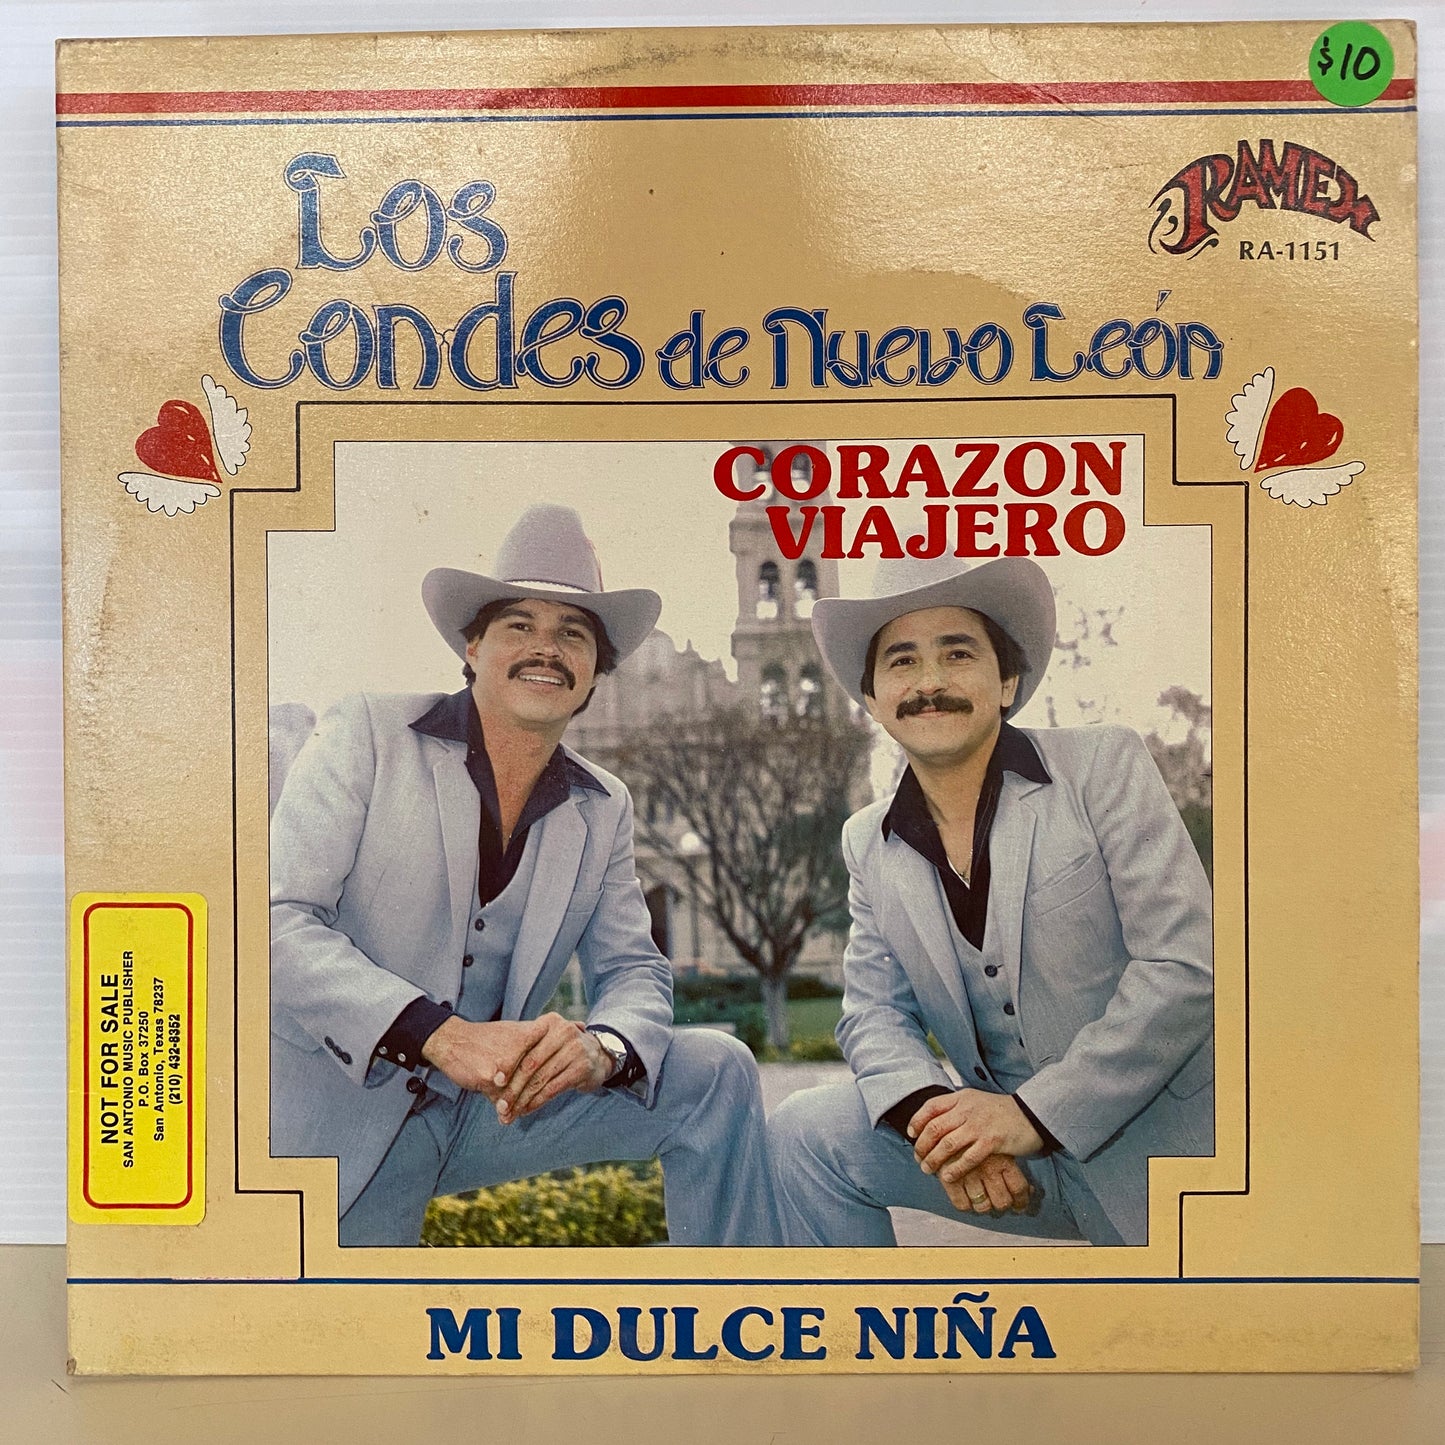 Los Condes De Nuevo Leon - Corazon Viajero (Vinyl)